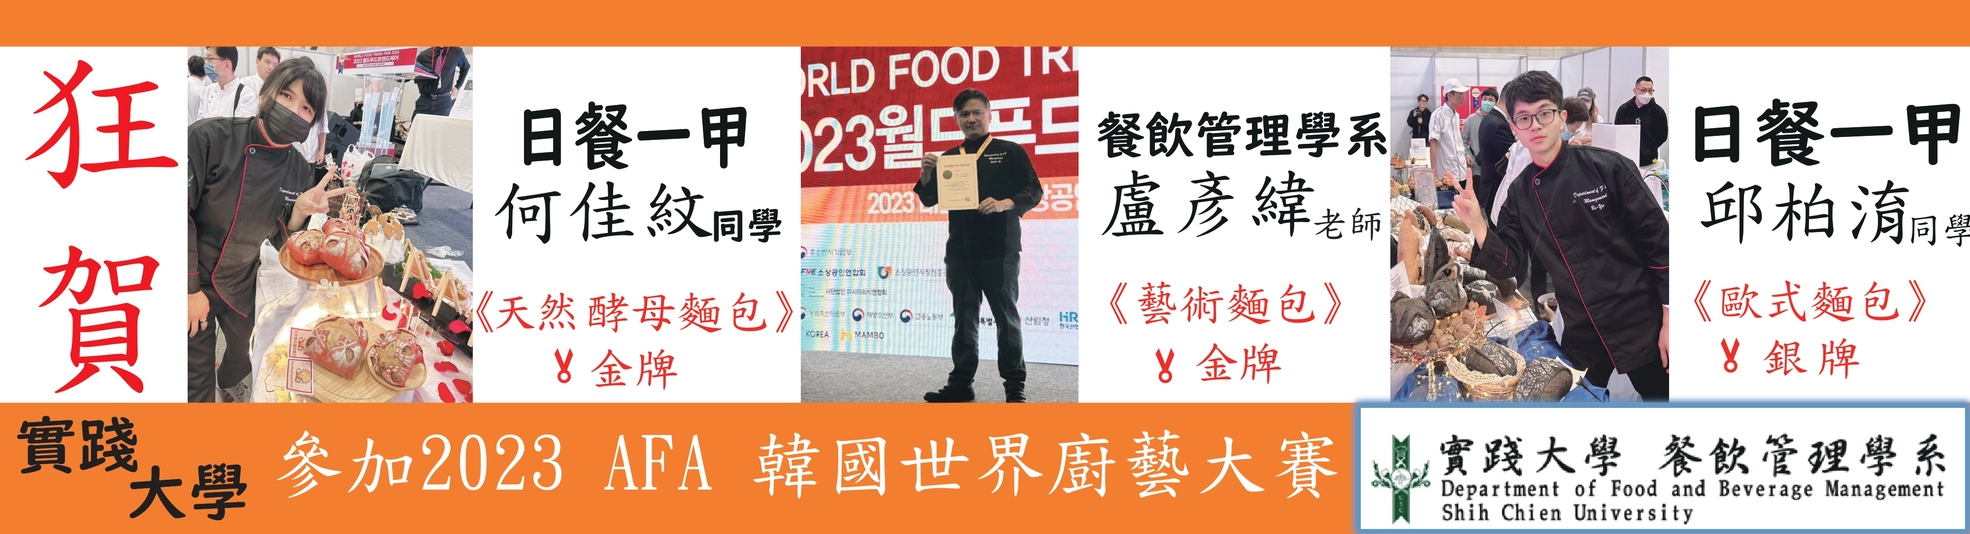 恭喜本院餐飲管理學系2023 AFA韓國廚藝大賽榮獲佳績